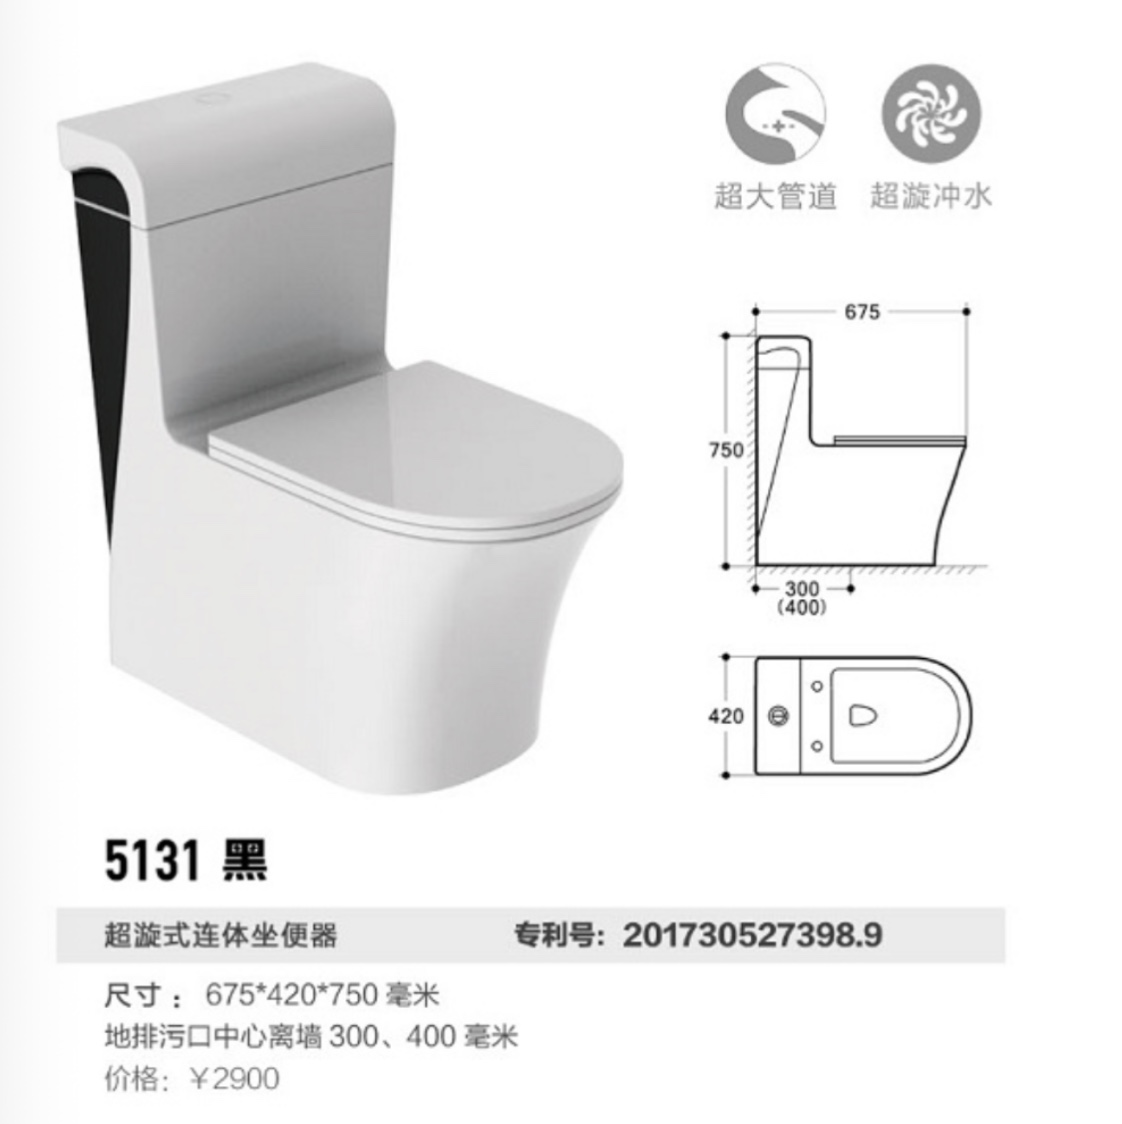 513居易卫浴原创设计超大管道超节水技术坐便器专利马桶图